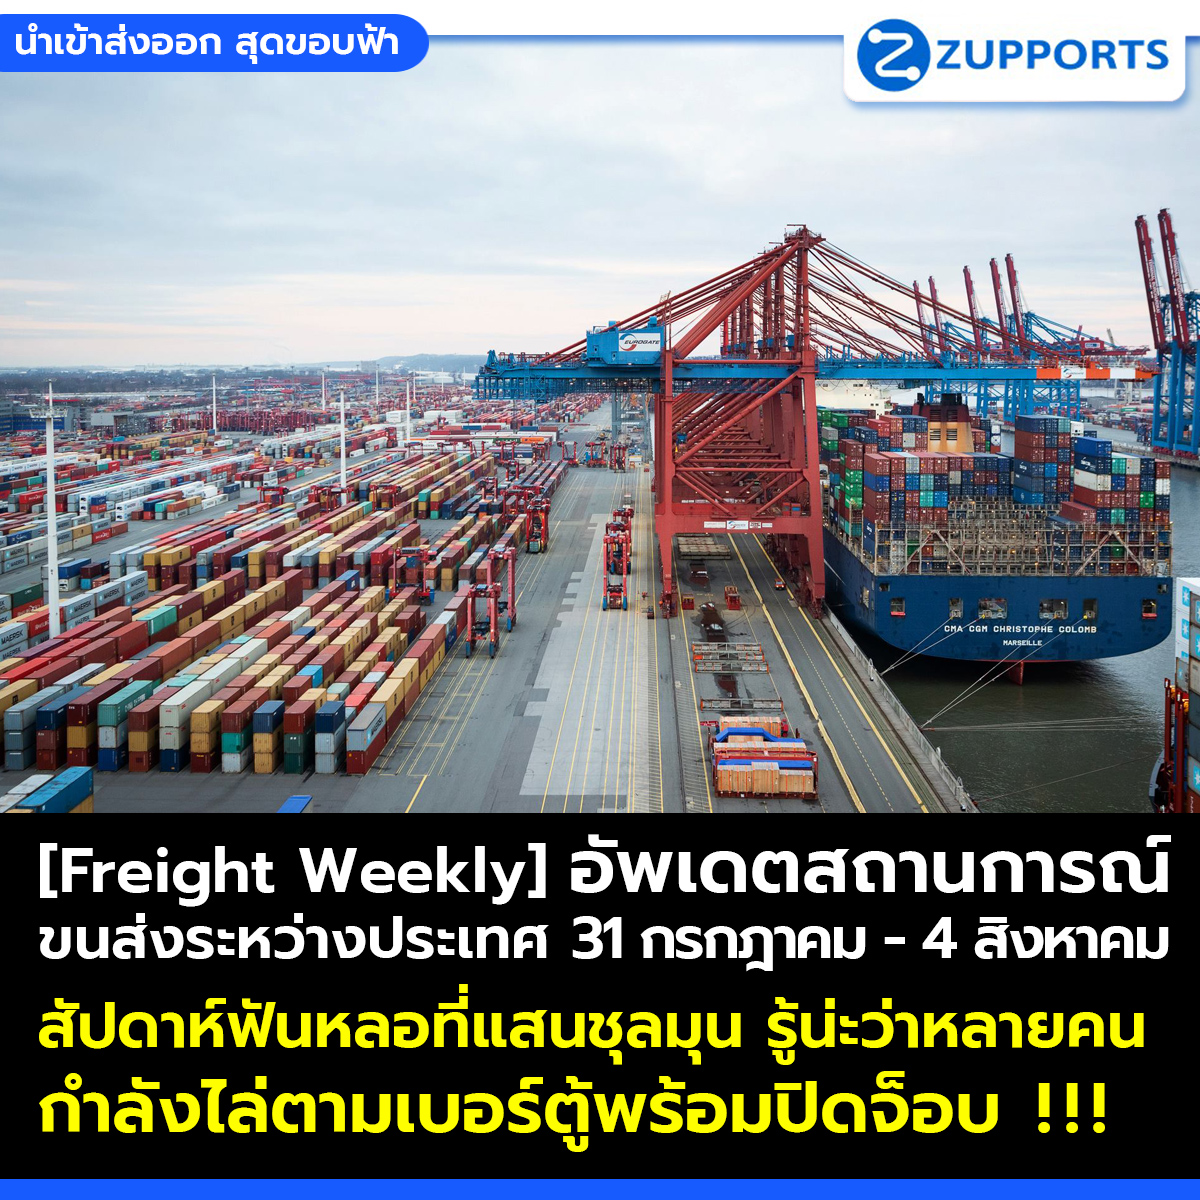 [Freight Weekly] : อัพเดตสถานการณ์ขนส่งสินค้าระหว่างประเทศ ประจำวันที่ 31 กรกฎาคม- 4 สิงหาคม กับ ZUPPORTS !!! สัปดาห์ฟันหลอที่แสนชุลมุน รู้น่ะว่าหลายคน กำลังไล่ตามเบอร์ตู้พร้อมปิดจ็อบ  !!!